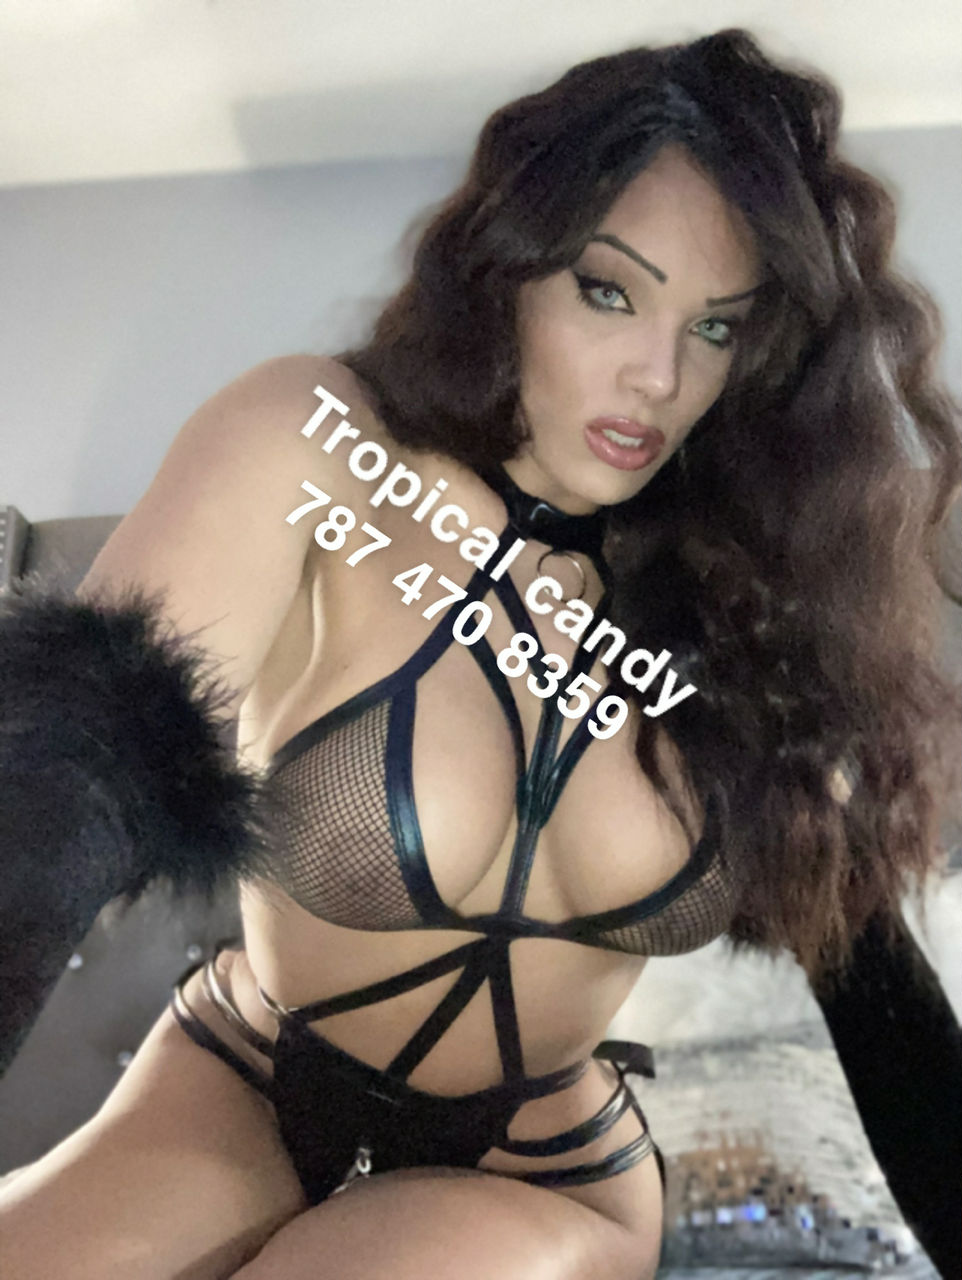 Big ass Latina 🇵🇷